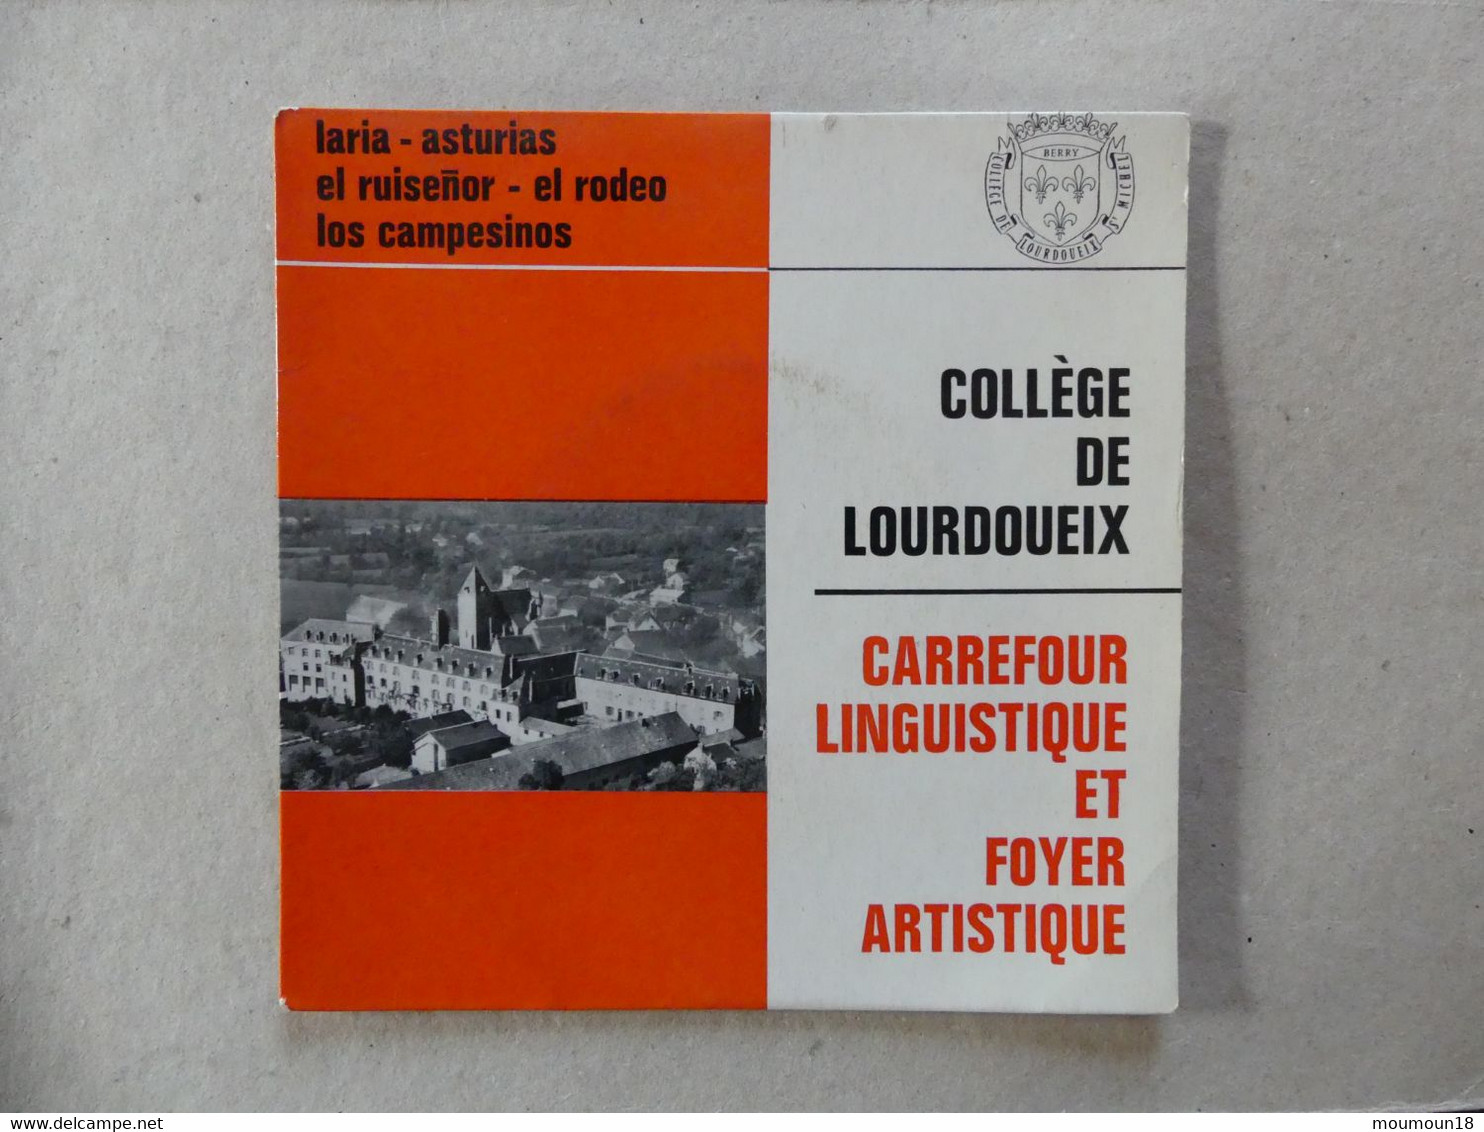 45 T College De Lourdoueix Carrefour Linguistique Et Foyer Artistique Matilla Ramos - Autres - Musique Espagnole